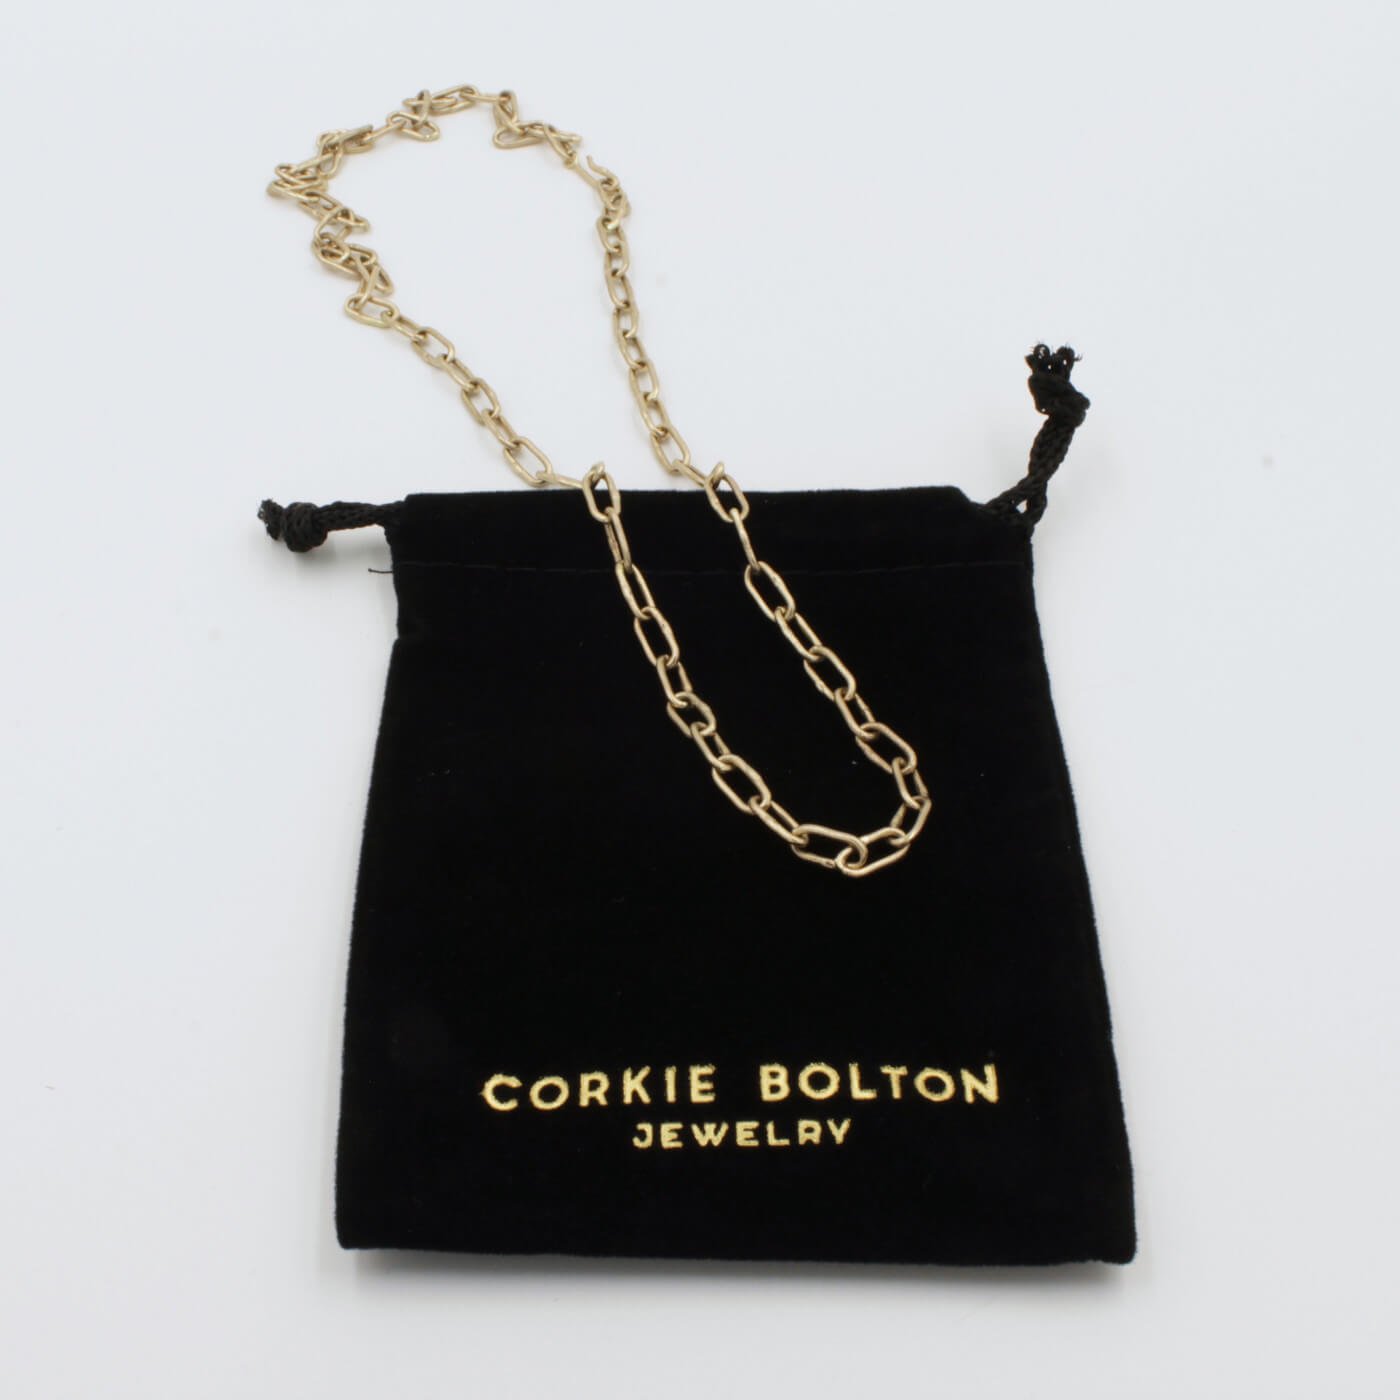 velvet bag with custom jewelry branding